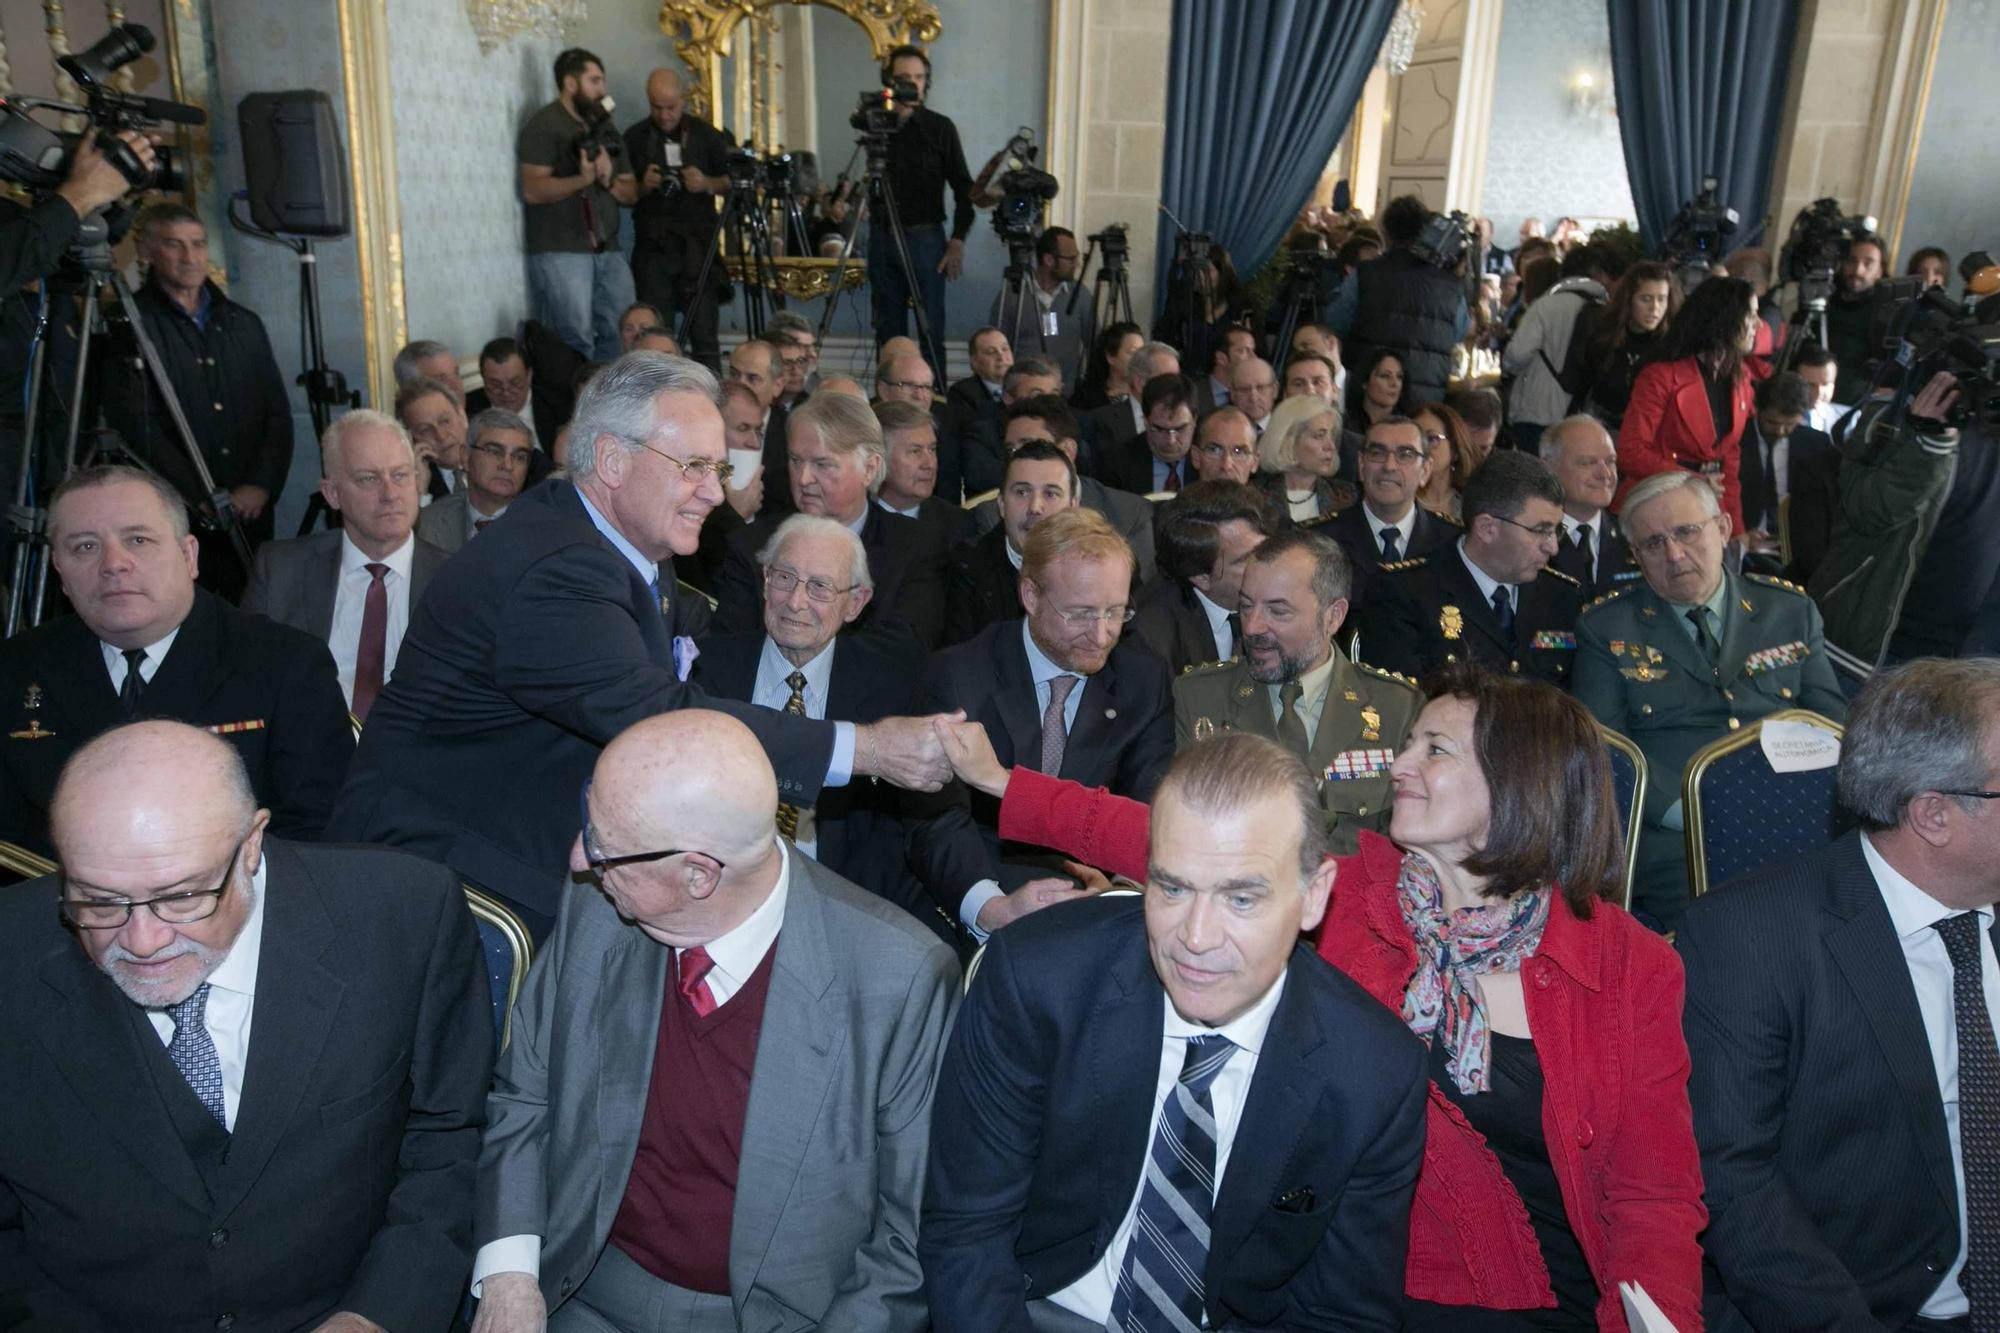 Así fue la investidura de Miguel Valor como alcalde de Alicante el 15 de enero de 2015